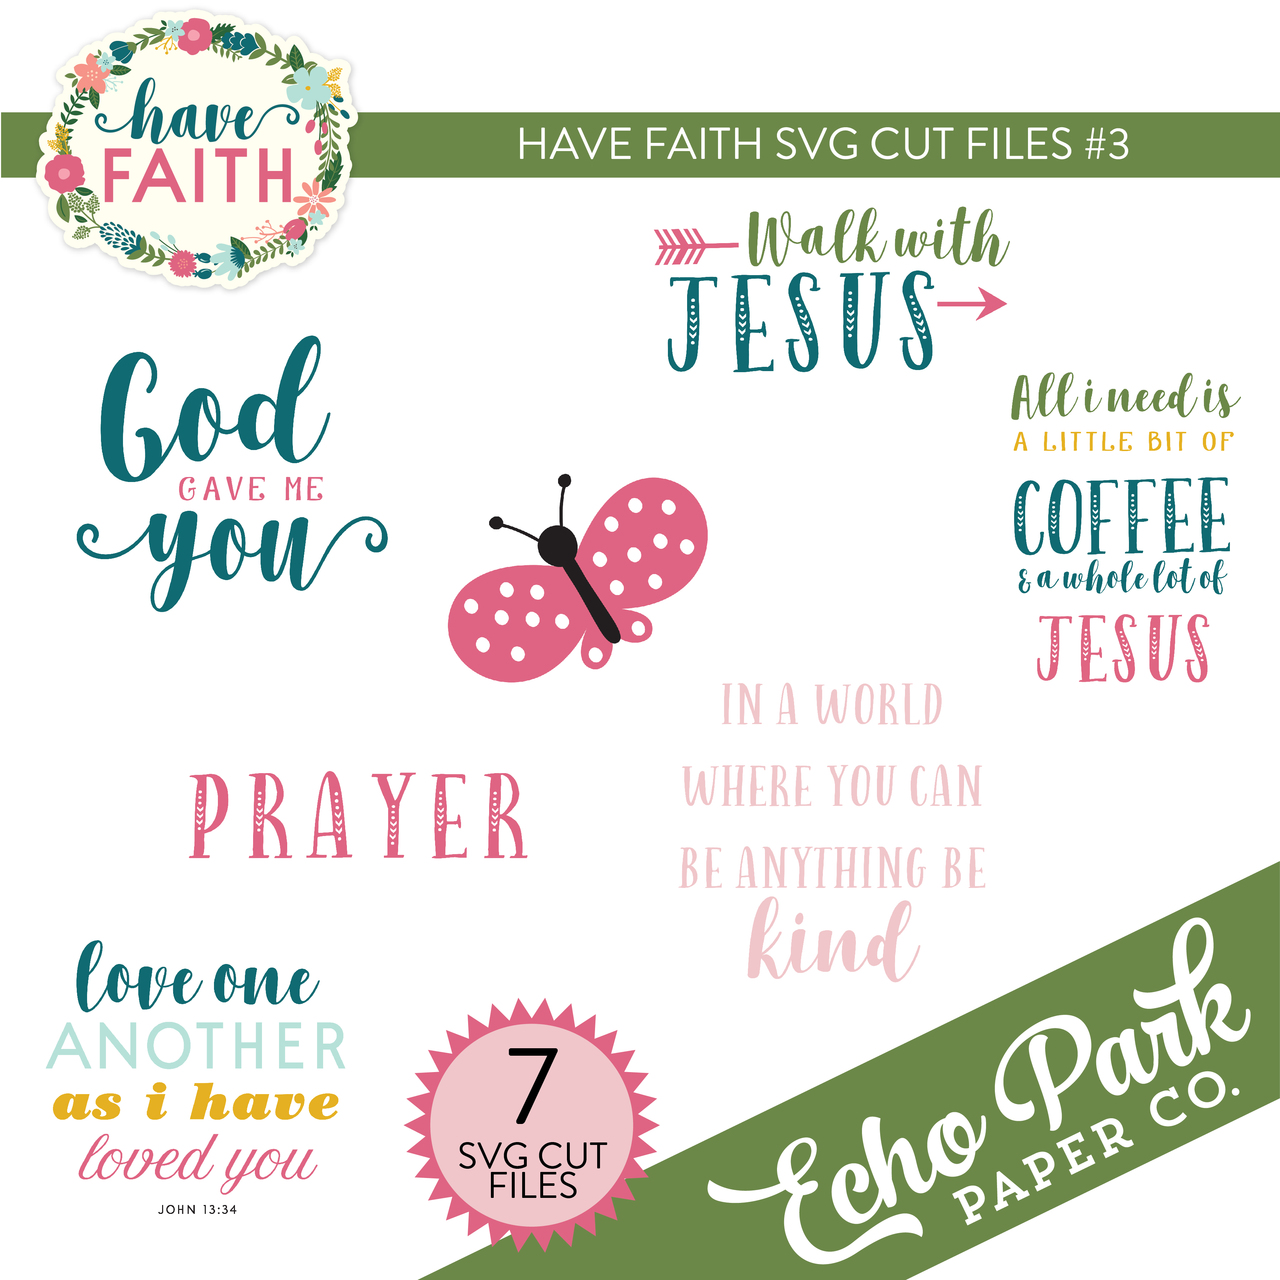 Have Faith SVG Cut Files #3